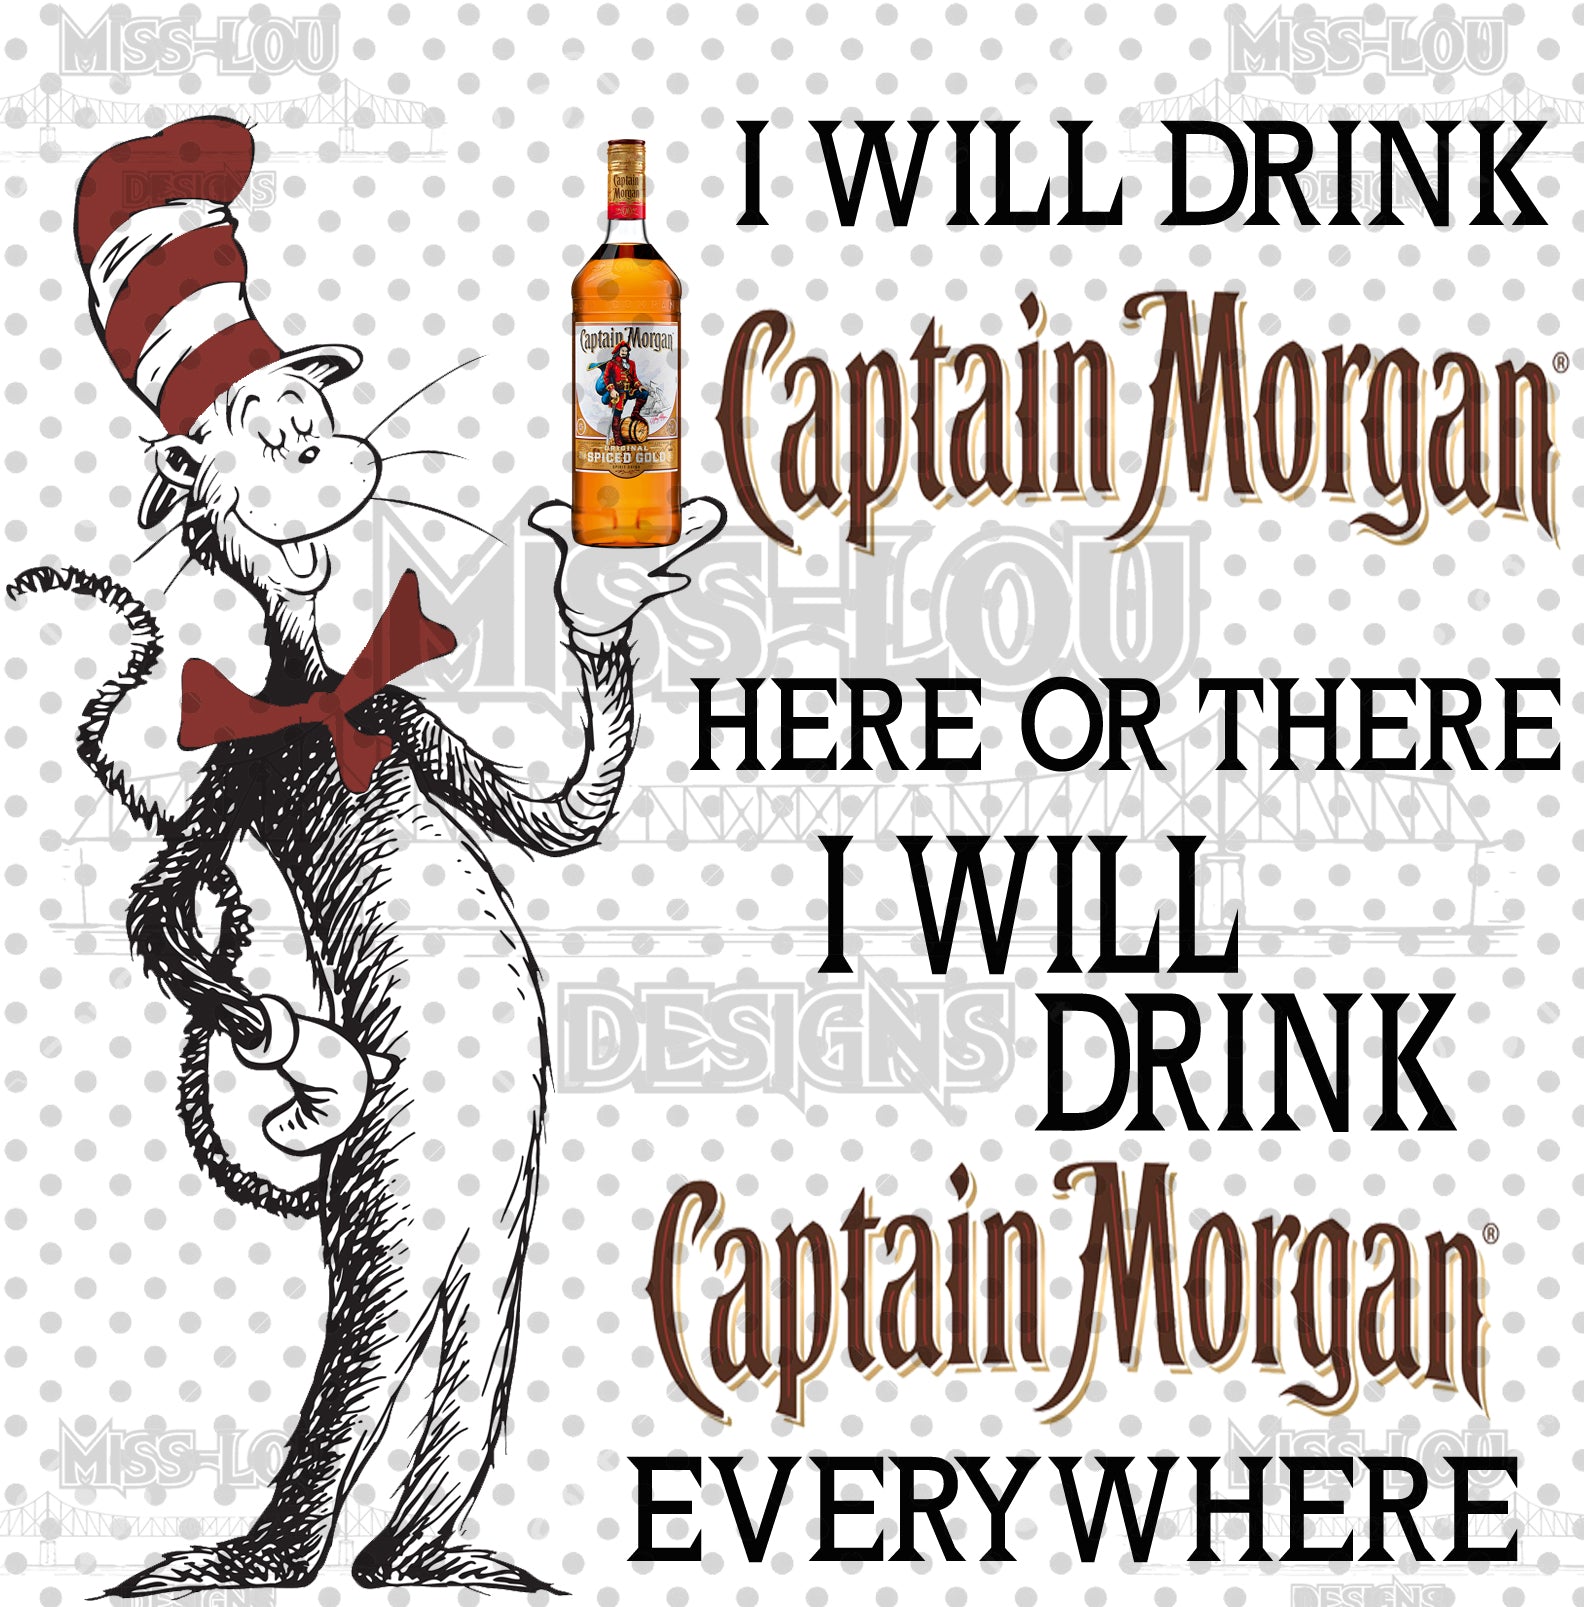 Cat In The Hat Captain Morgan Digital Download Miss Lou Designs More